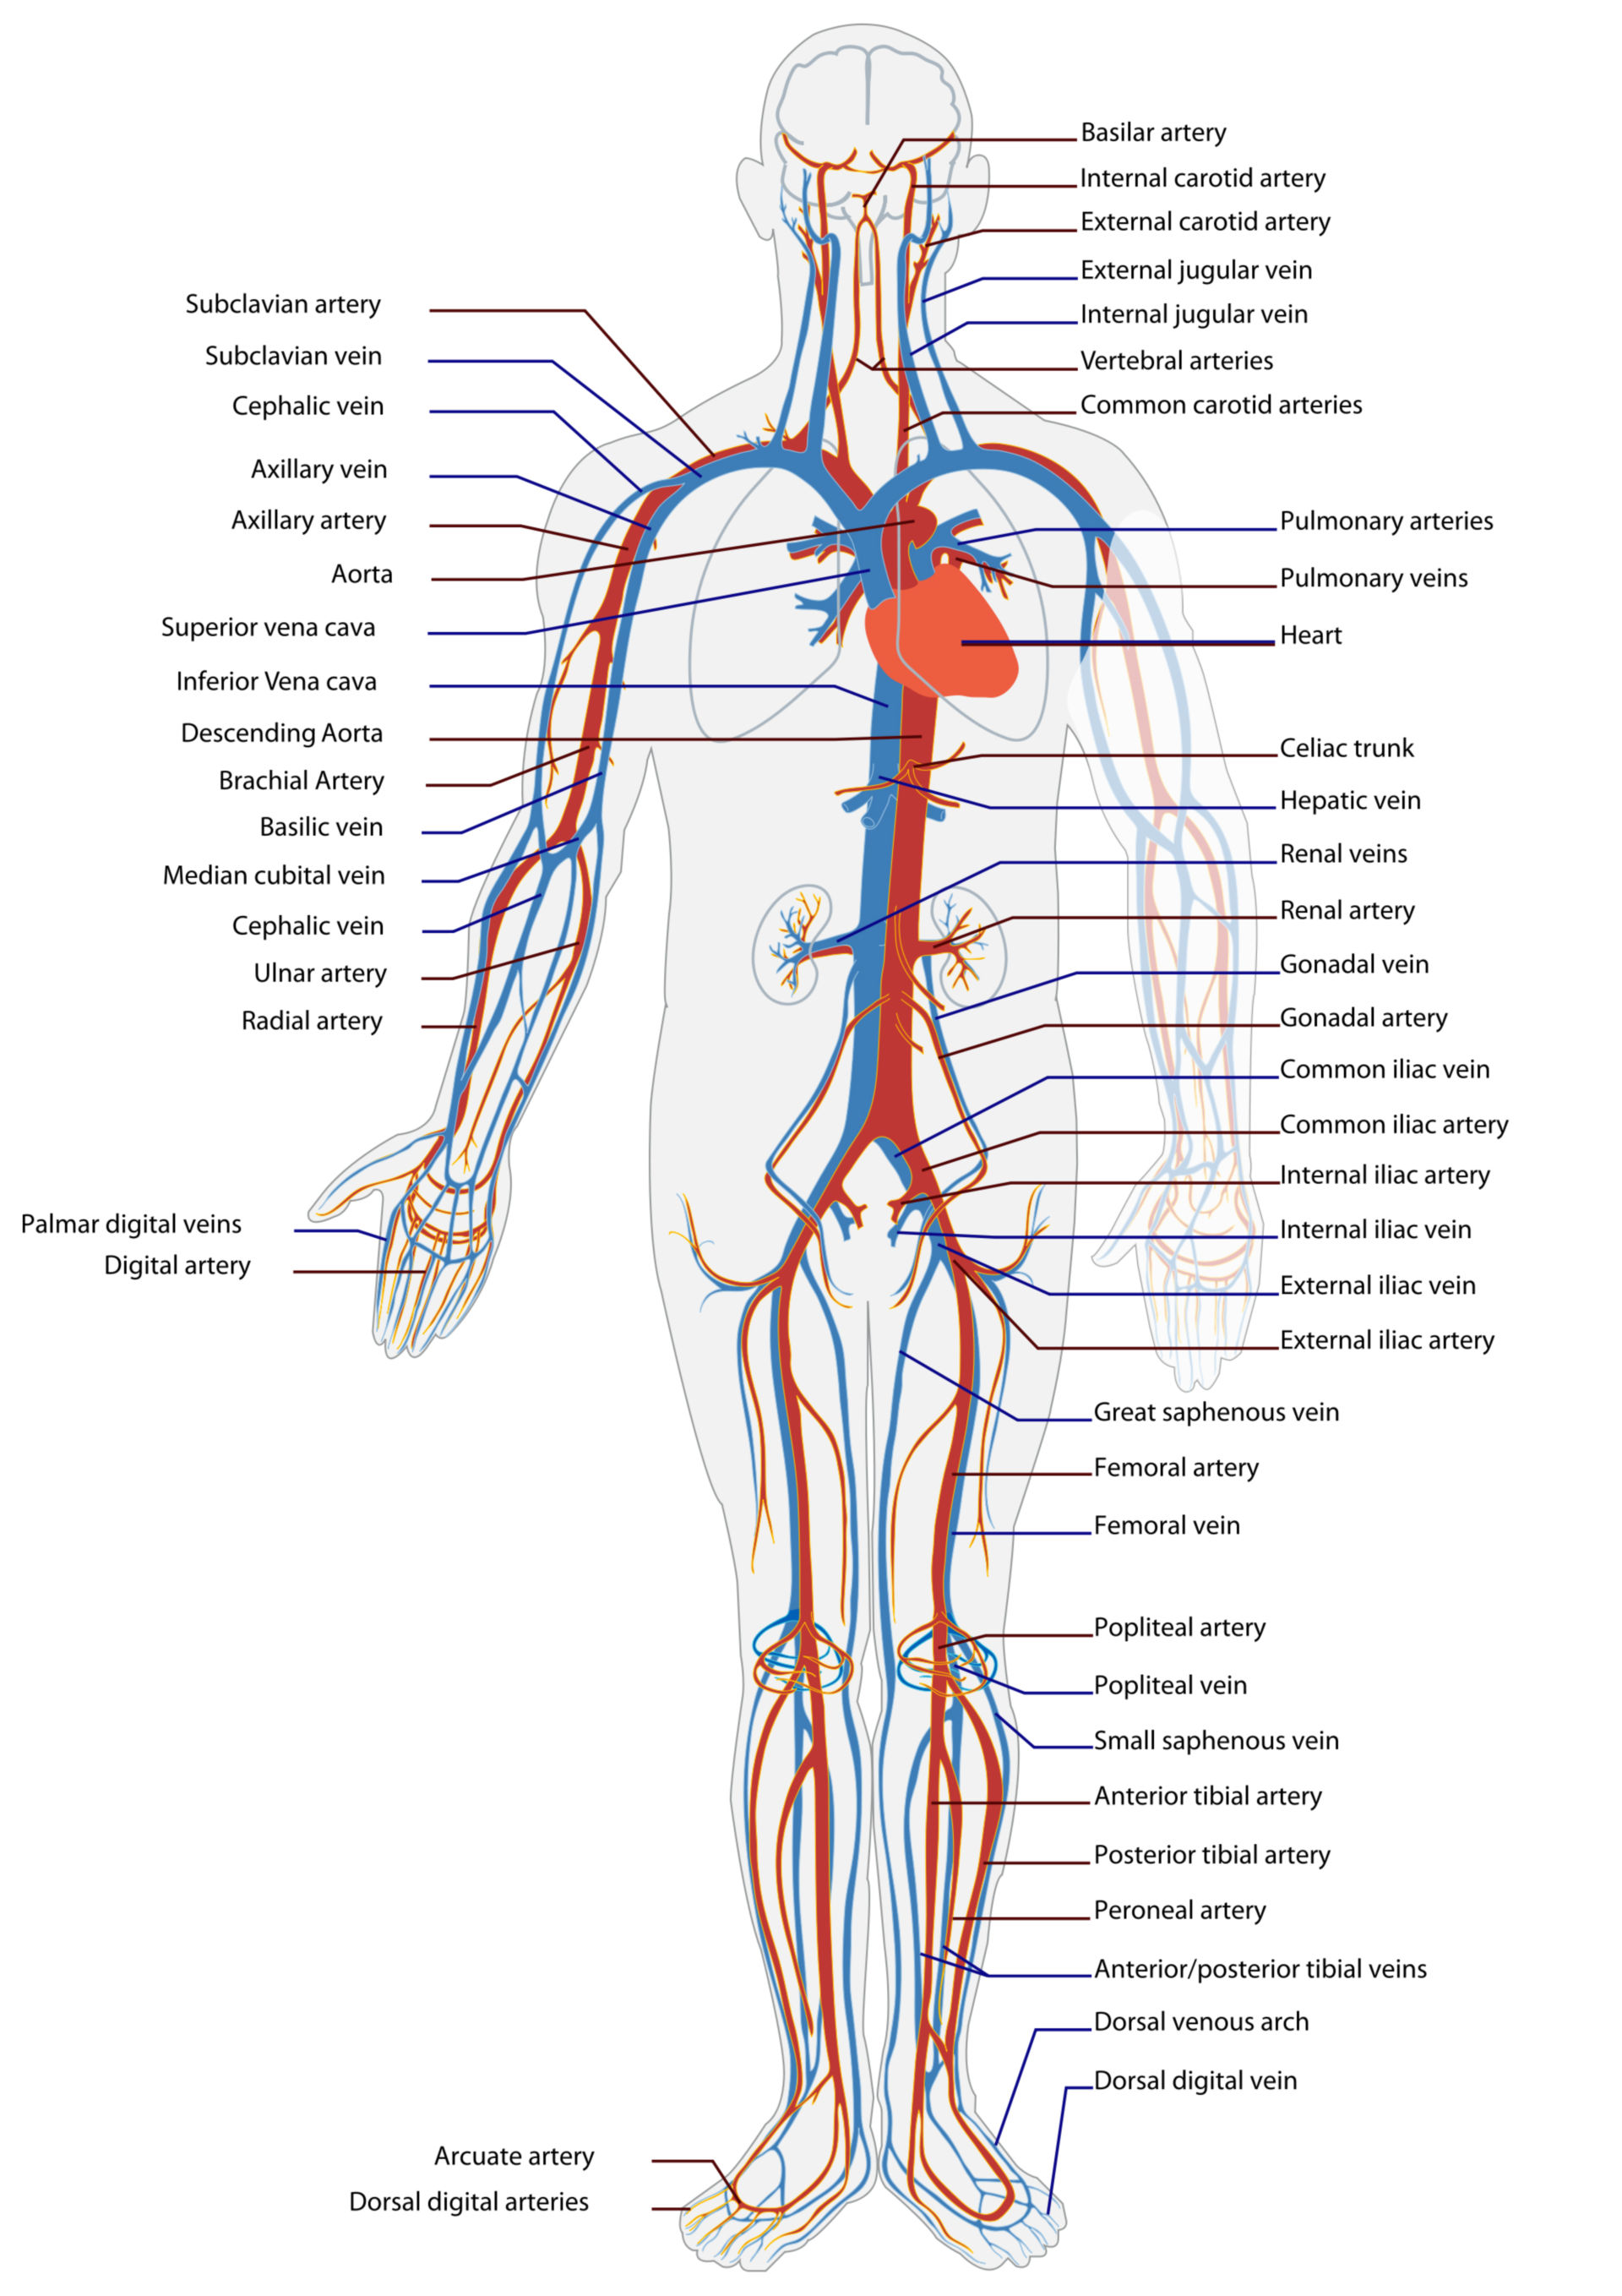 Blutkreislauf des Menschen (Illustration)